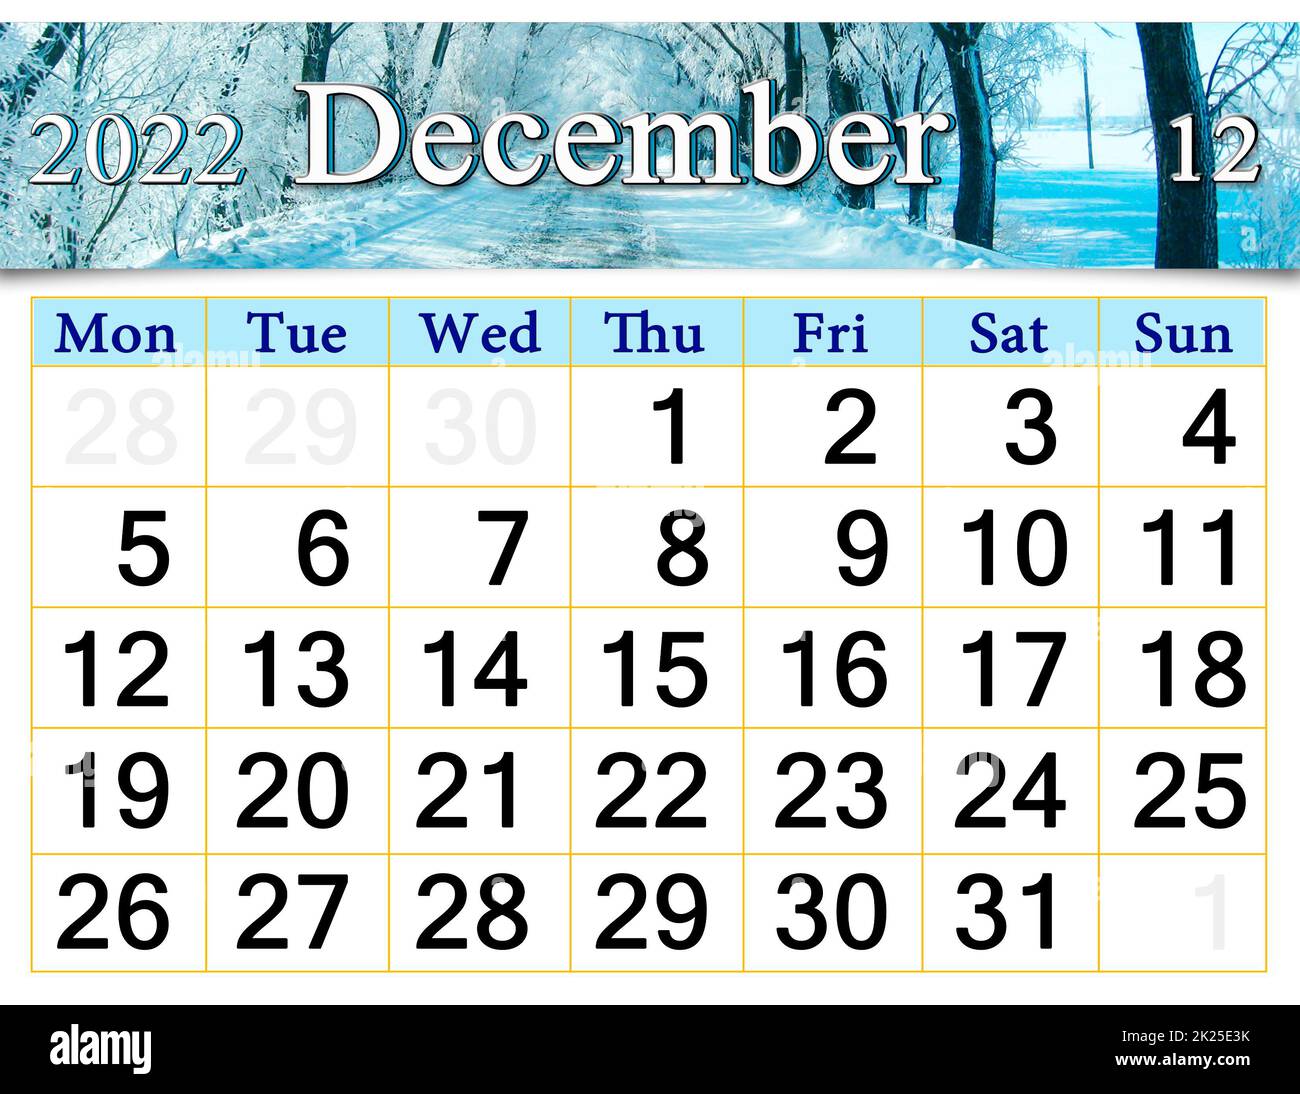 Calendario para el 2022 de diciembre con foto de la carretera de invierno cubierta de escarcha Foto de stock